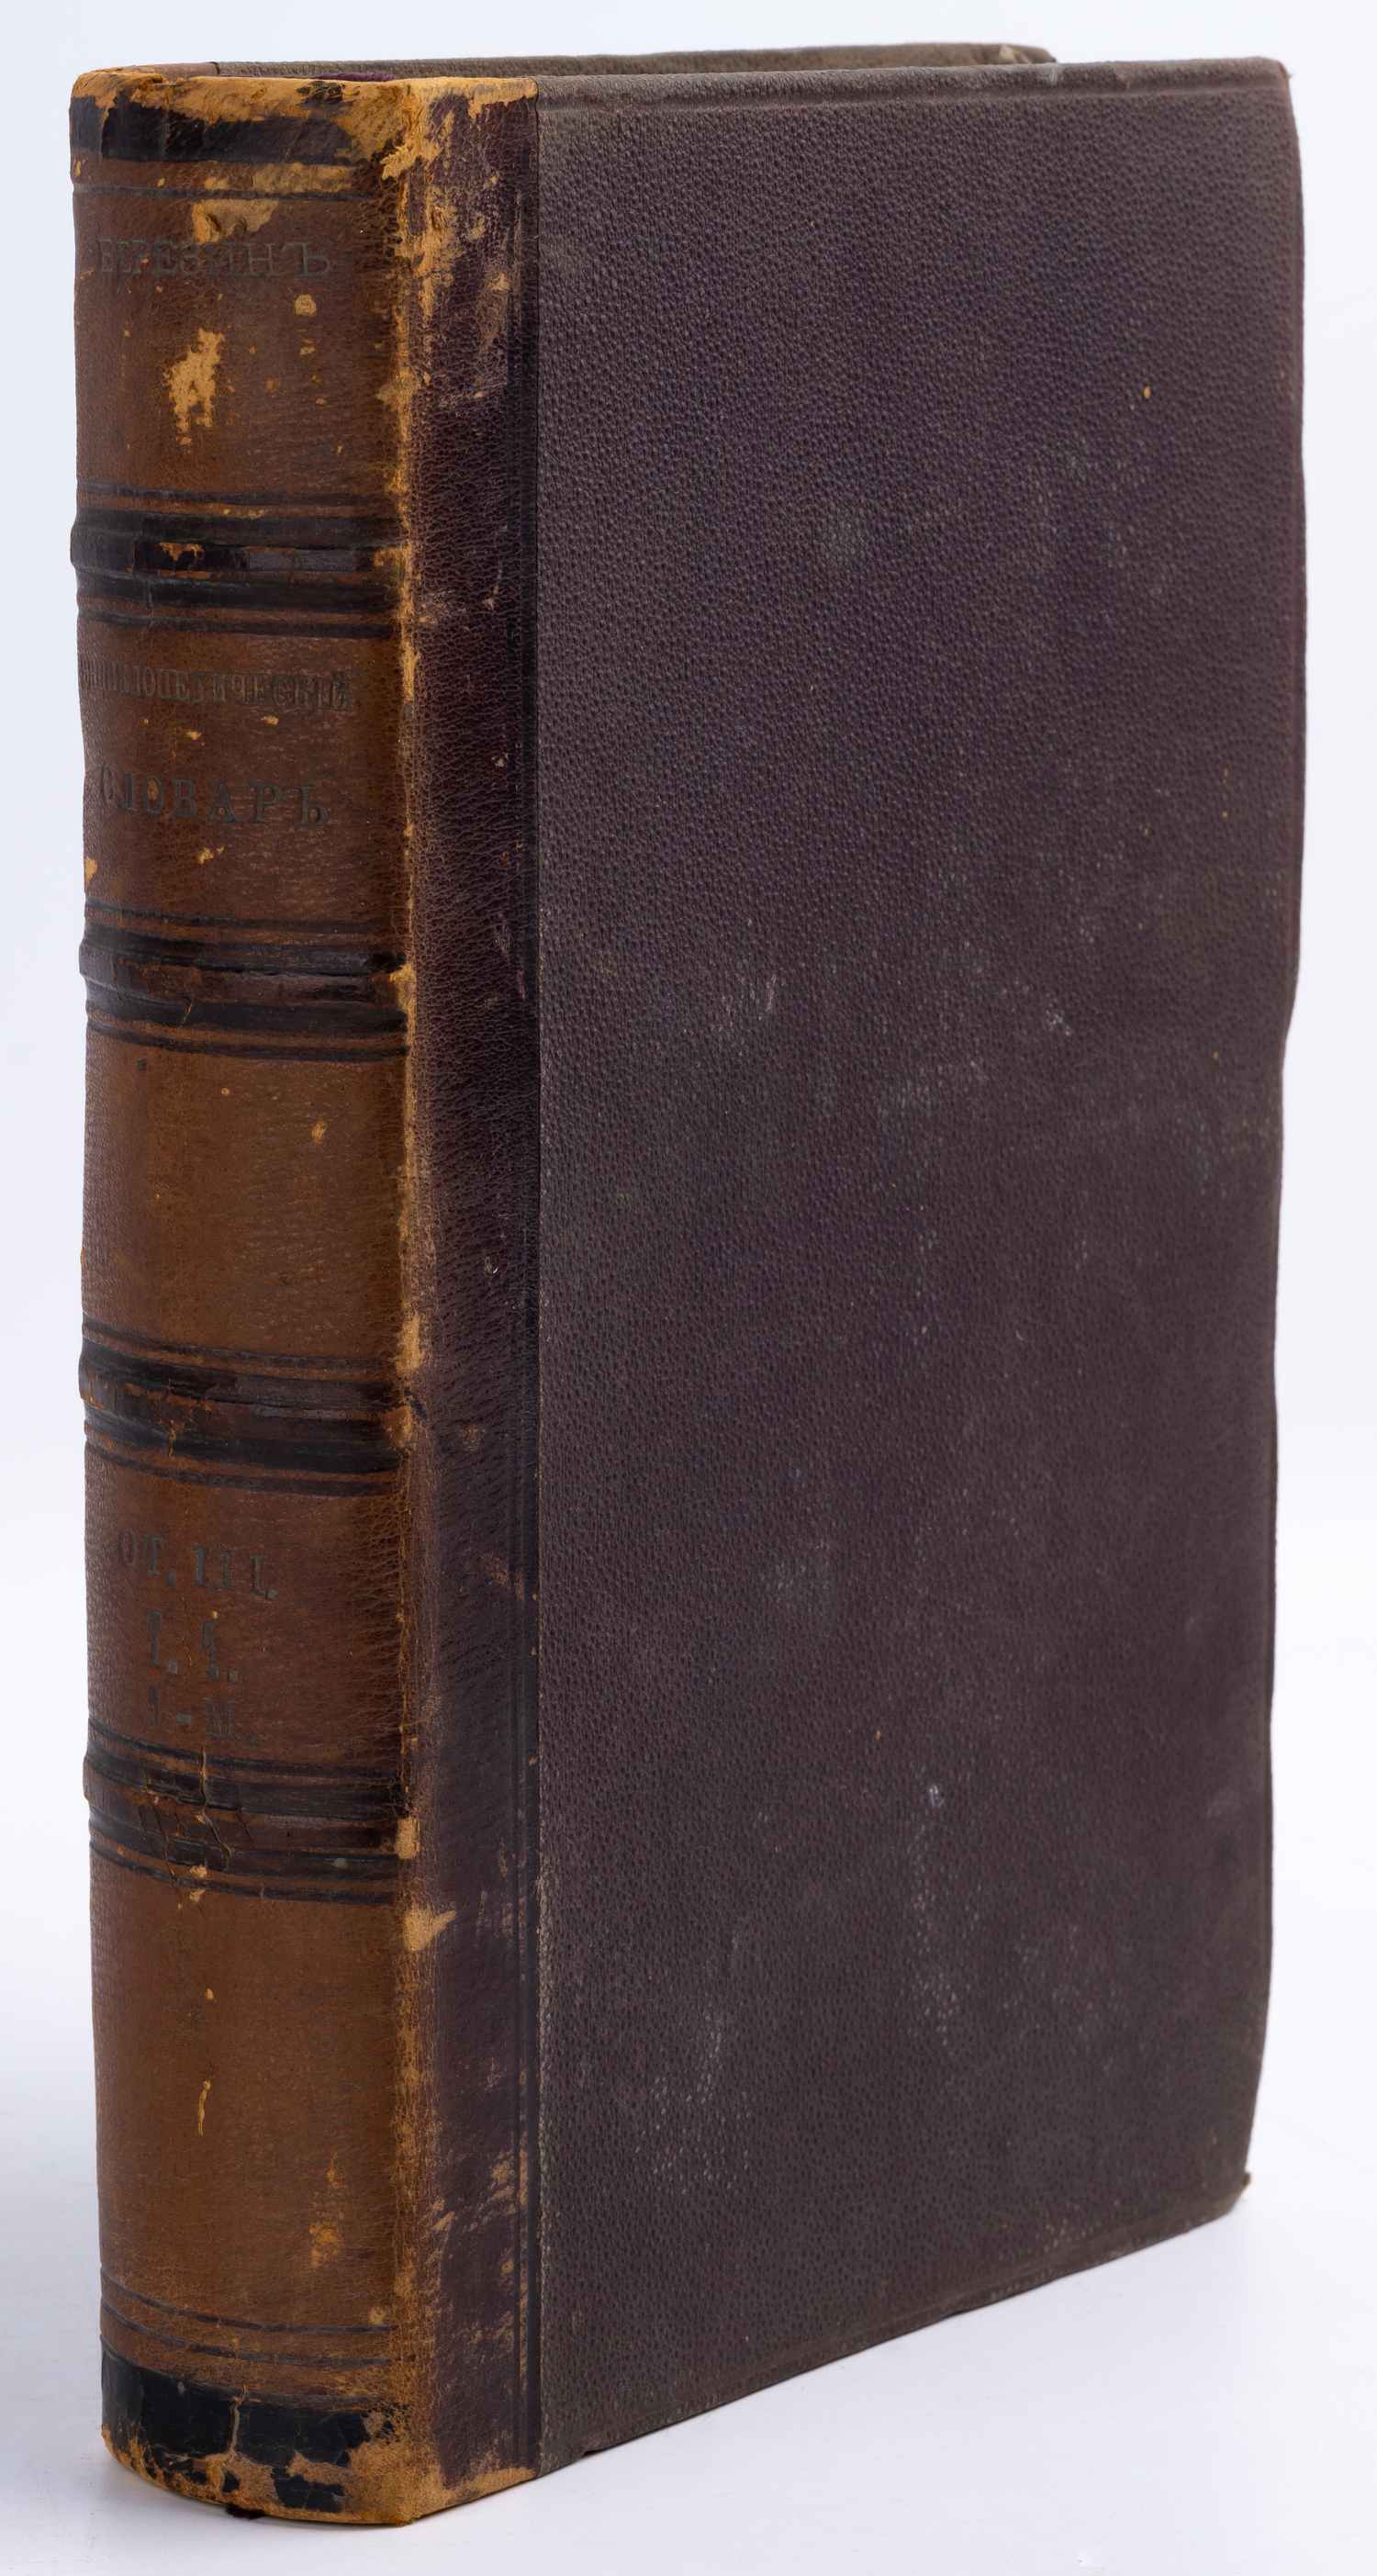 Березин И.Н. Русский энциклопедический словарь. Отдел III. Т.1 (СПб., 1874).